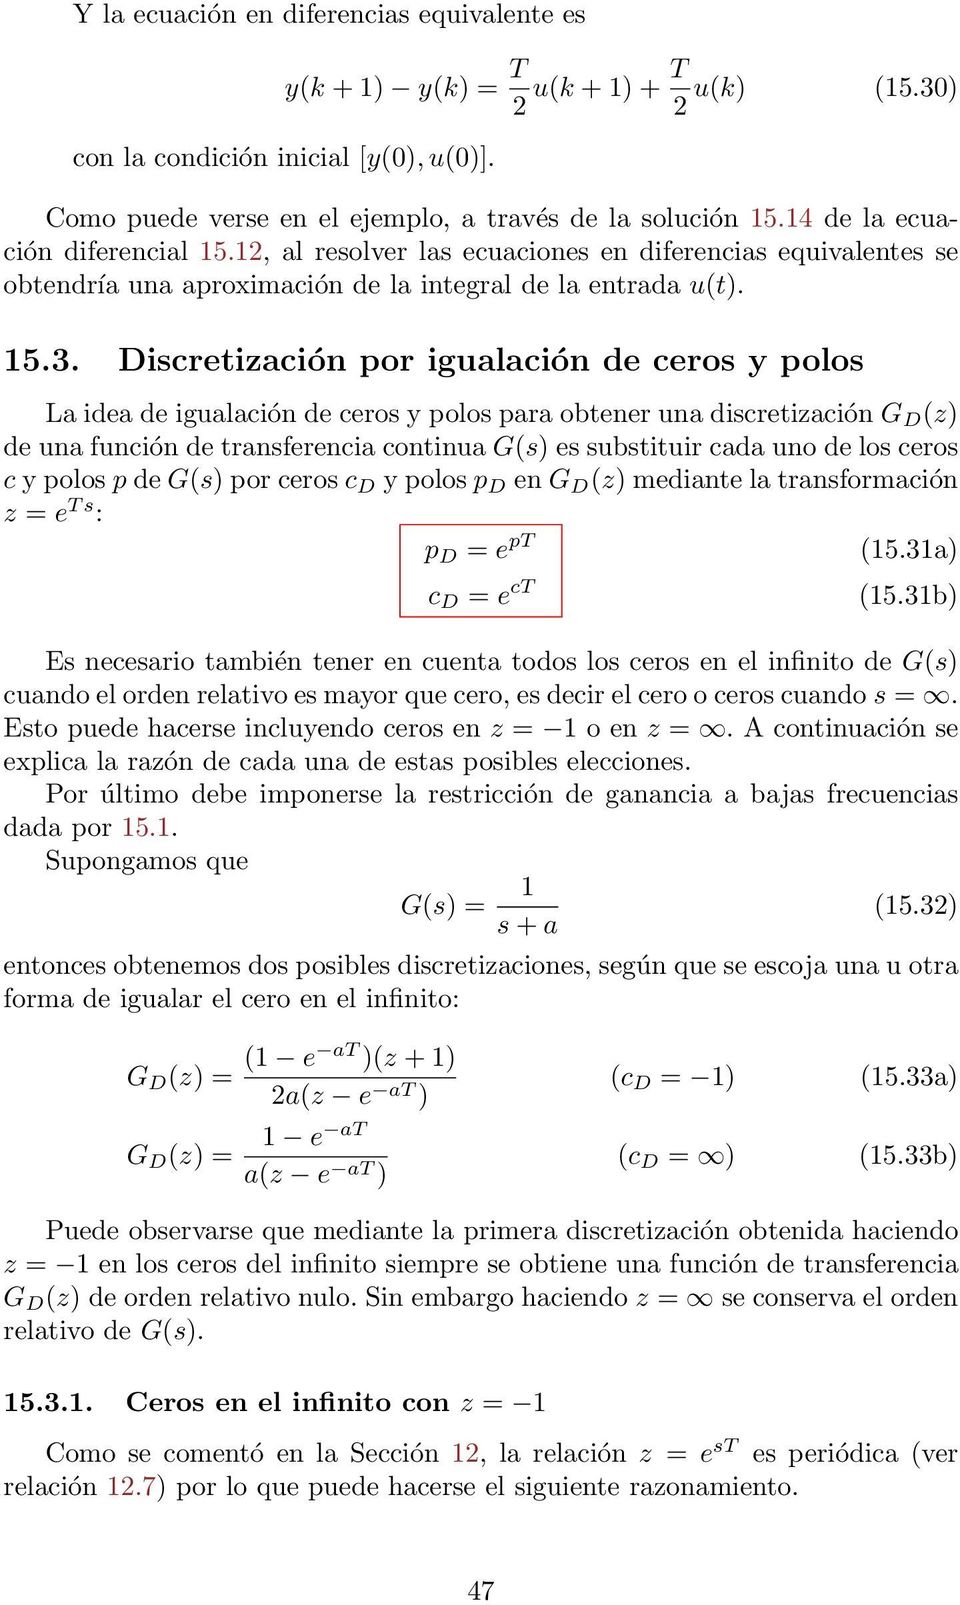 Dicretiación por igualación de cero y polo La idea de igualación de cero y polo para obtener una dicretiación G D () de una función de tranferencia continua G() e ubtituir cada uno de lo cero c y